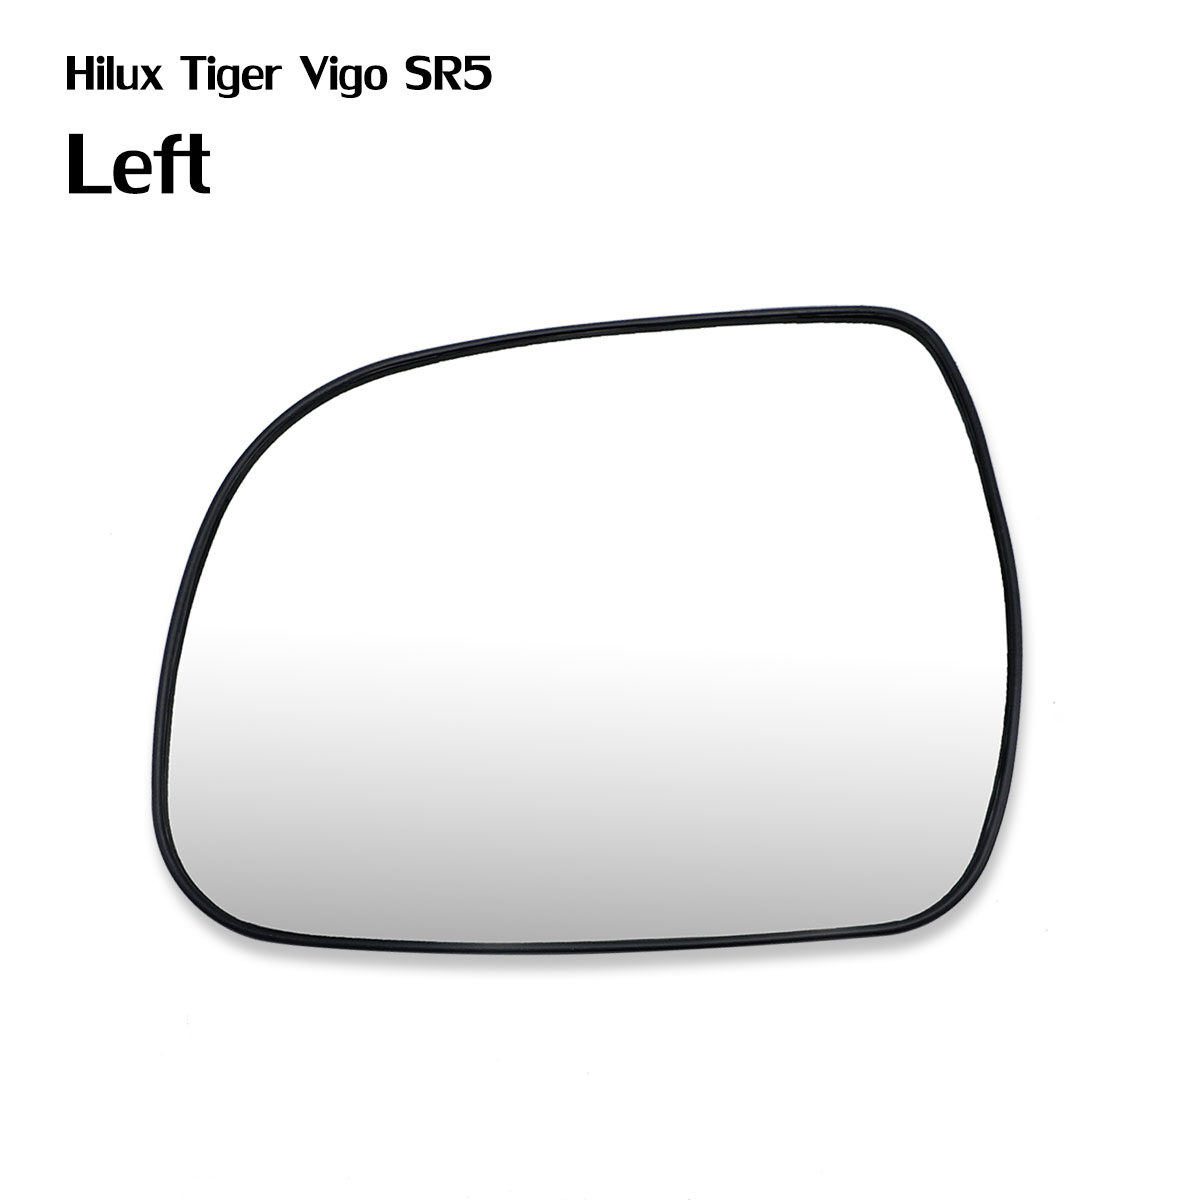 เนื้อเลนส์กระจก ข้าง ซ้าย ใส่ Toyota Hilux New Vigo Champ 2012 - 2014 LH Wing Side Door Mirror Glass Len Hilux Vigo Champ SR5 2012-2014 Toyota มีบริการเก็บเงินปลายทาง